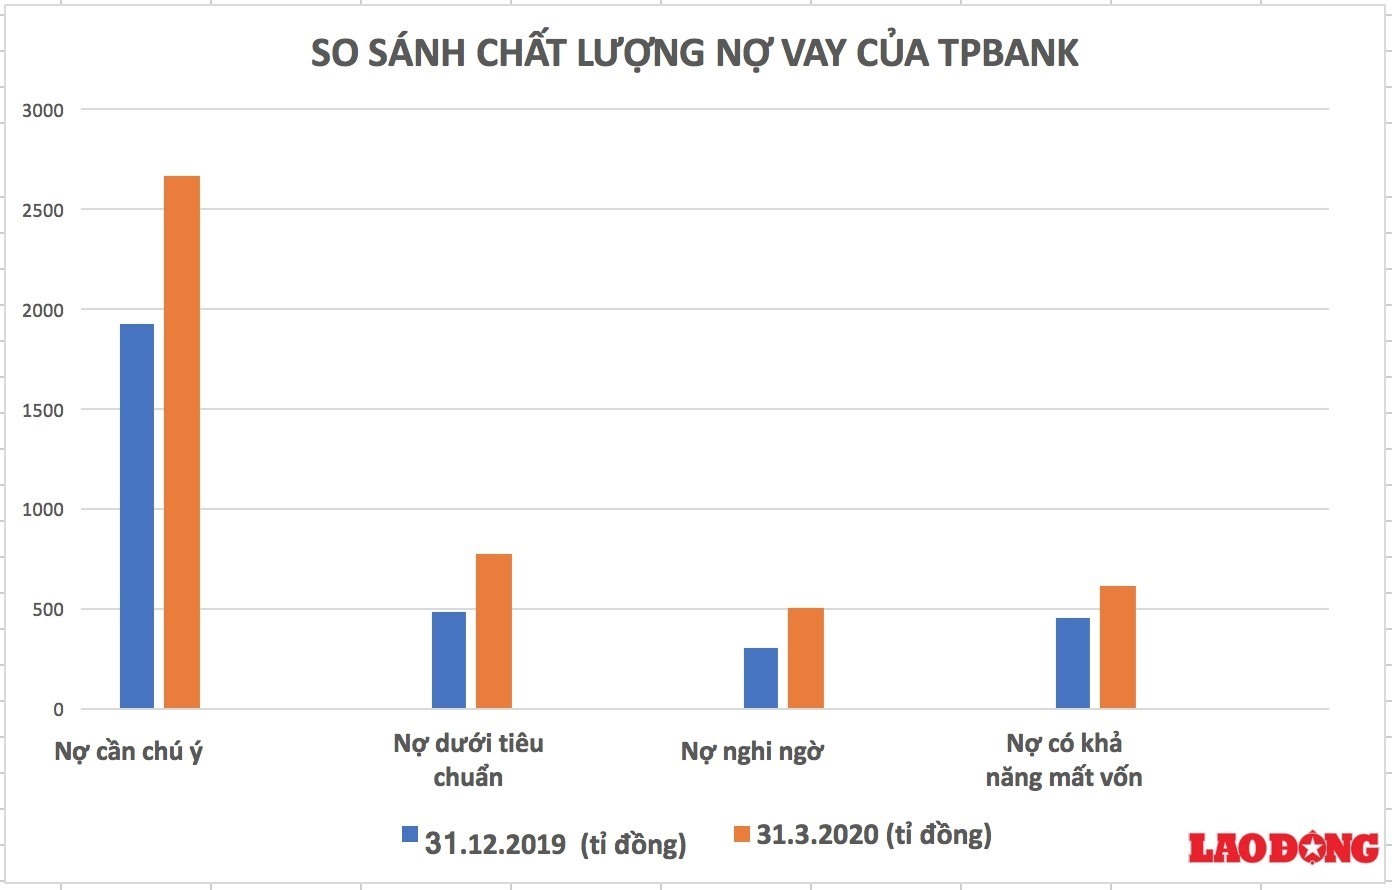 Bảng so sánh chất lượng nợ xấu của TPBank tính tới thời điểm 31.3.2020 và thời điểm 31.12.2019 Ảnh: LH